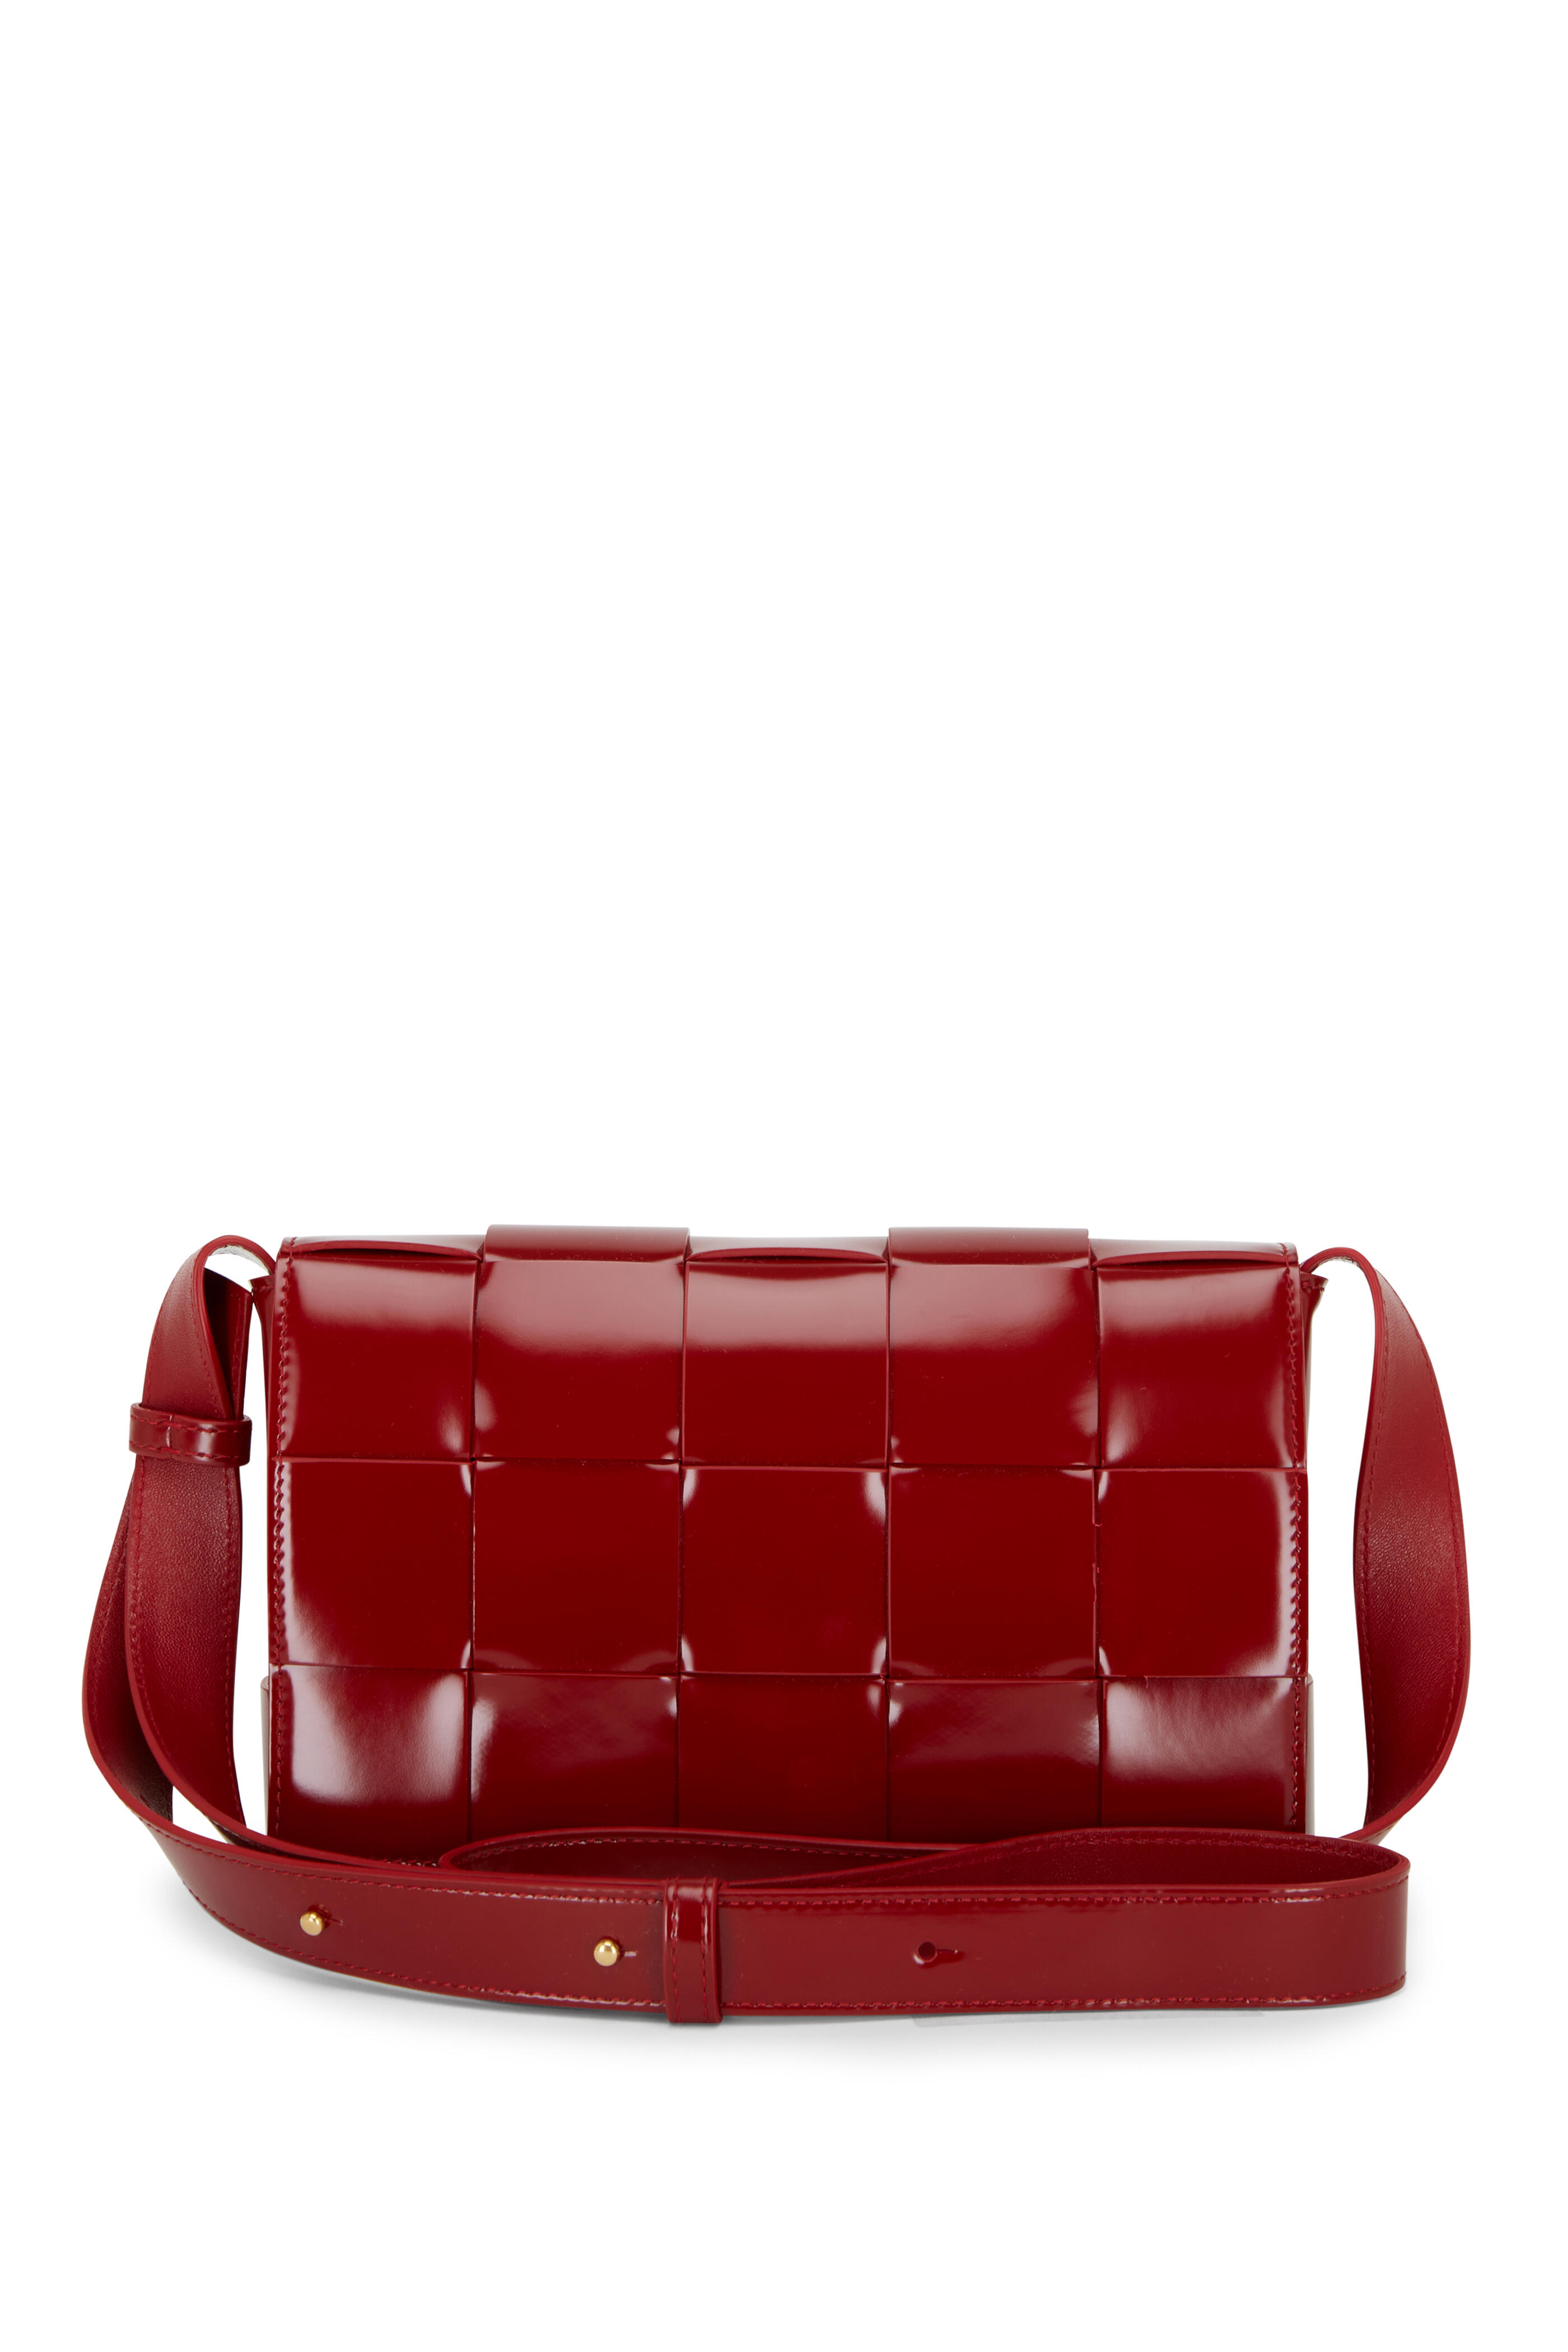 Bottega Veneta - Cassette Dark Red Woven Patent Leather Bag